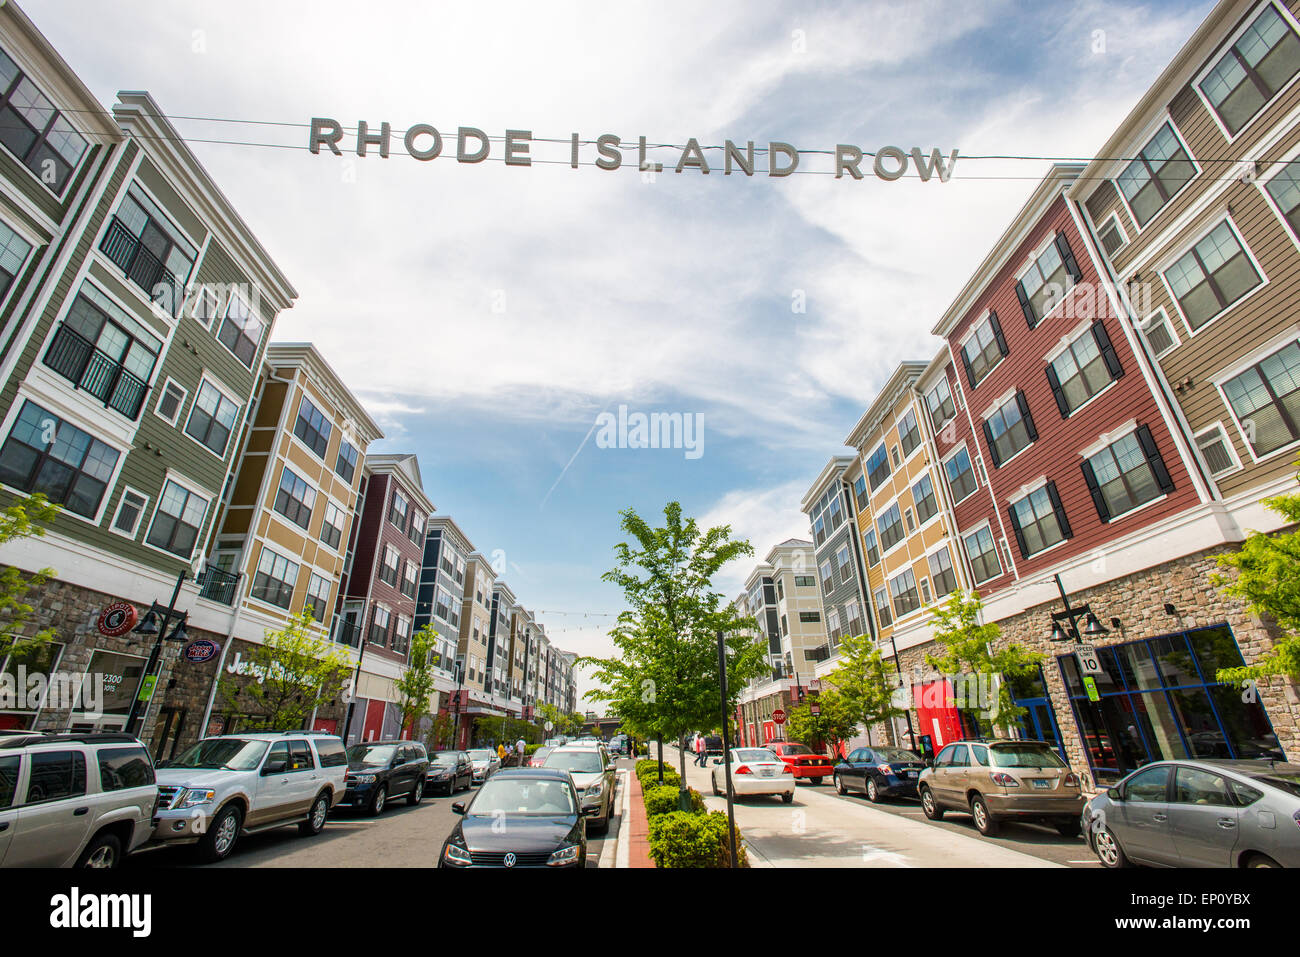 Stadterneuerung zeigt Einkaufs- und Stadt Häuser in Rhode Island Row in Washington DC, USA Stockfoto